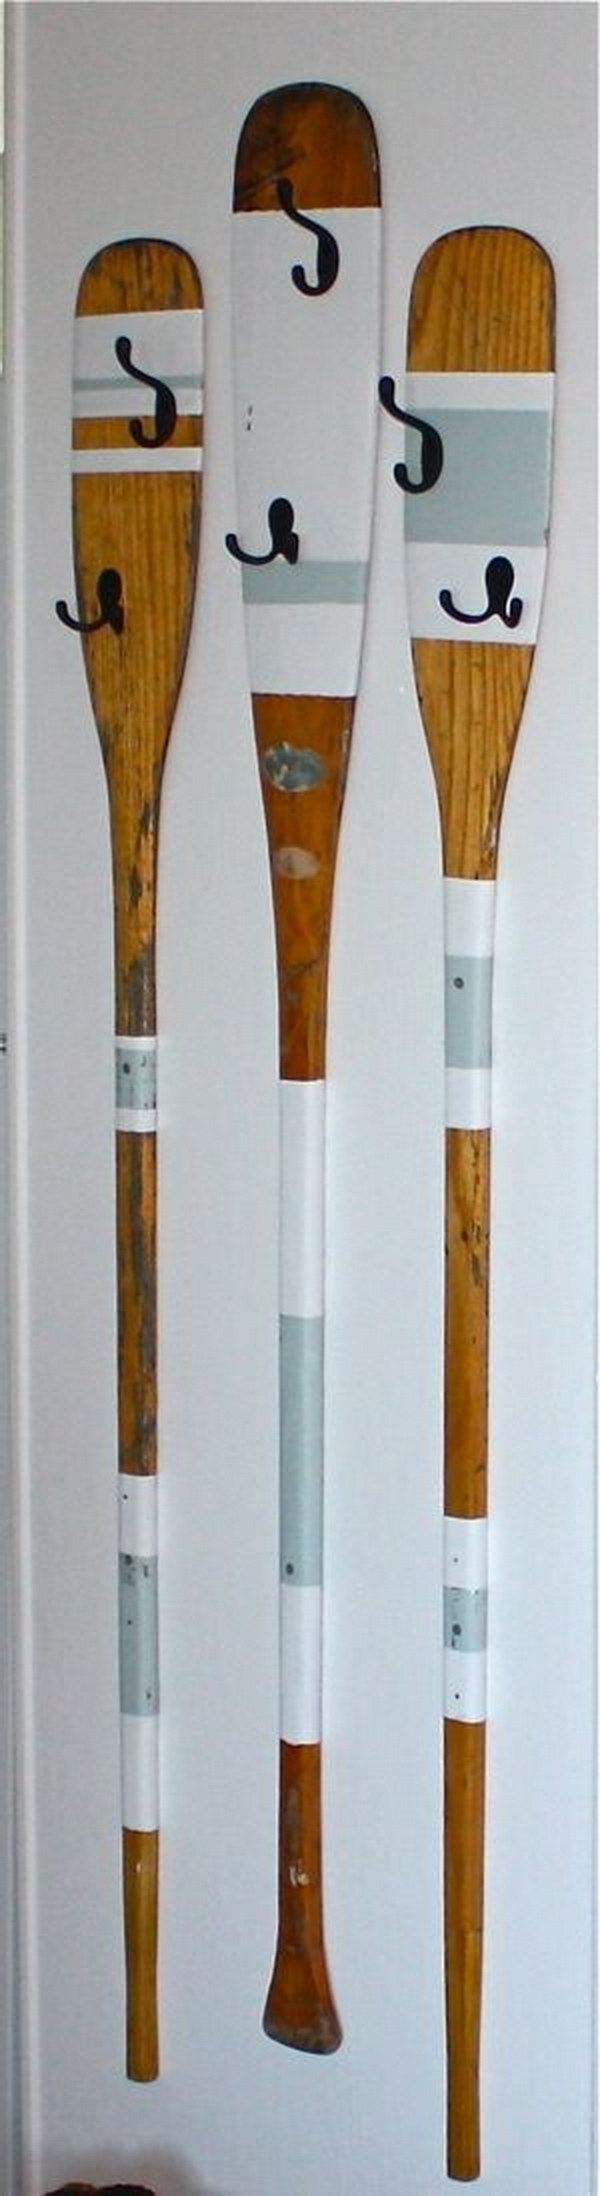 Upcycled Rowing Oars Coat Hangers 